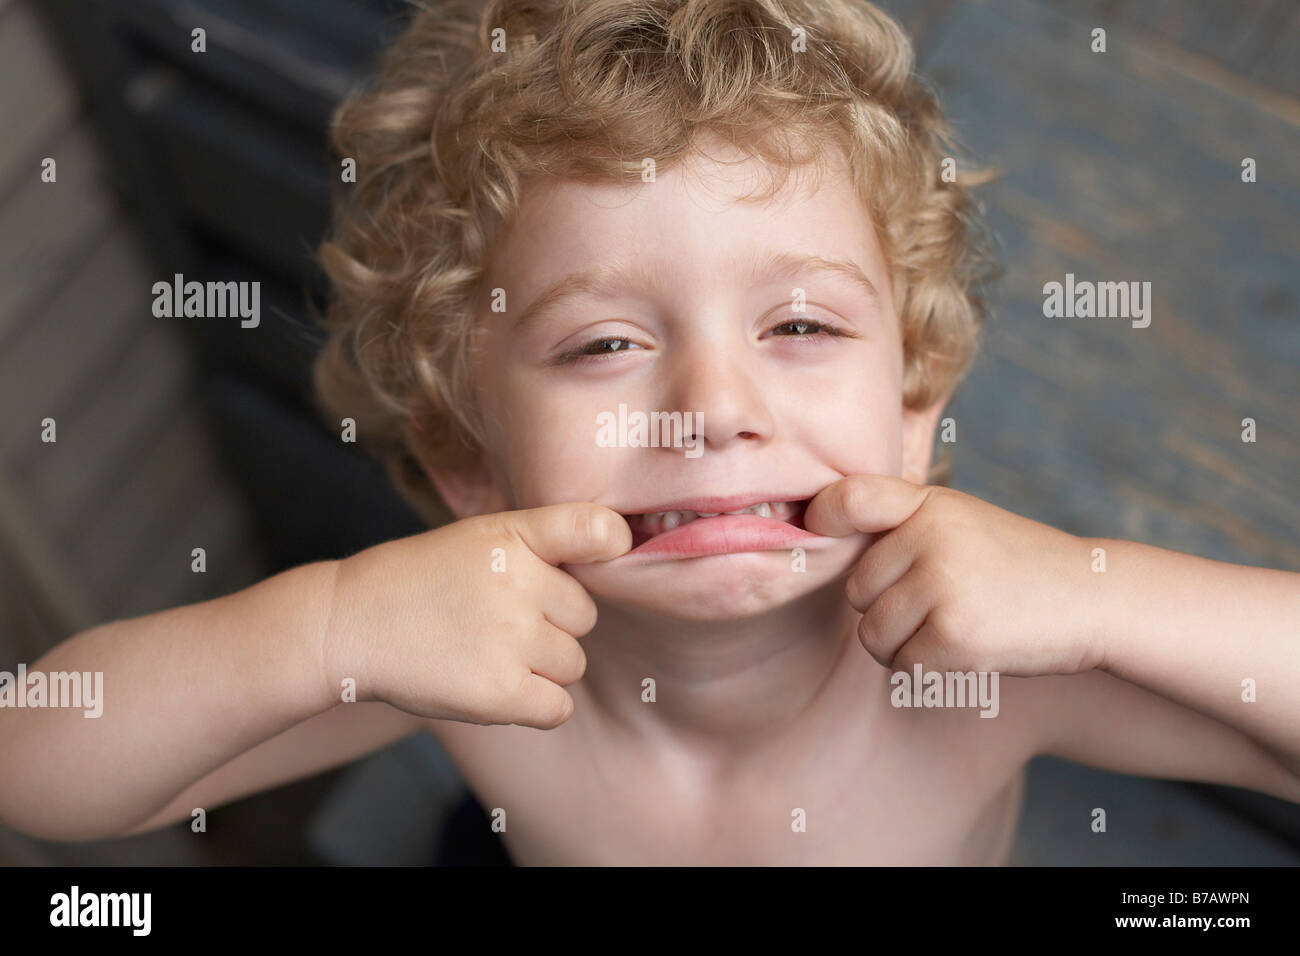 Little Boy haciendo caras Foto de stock